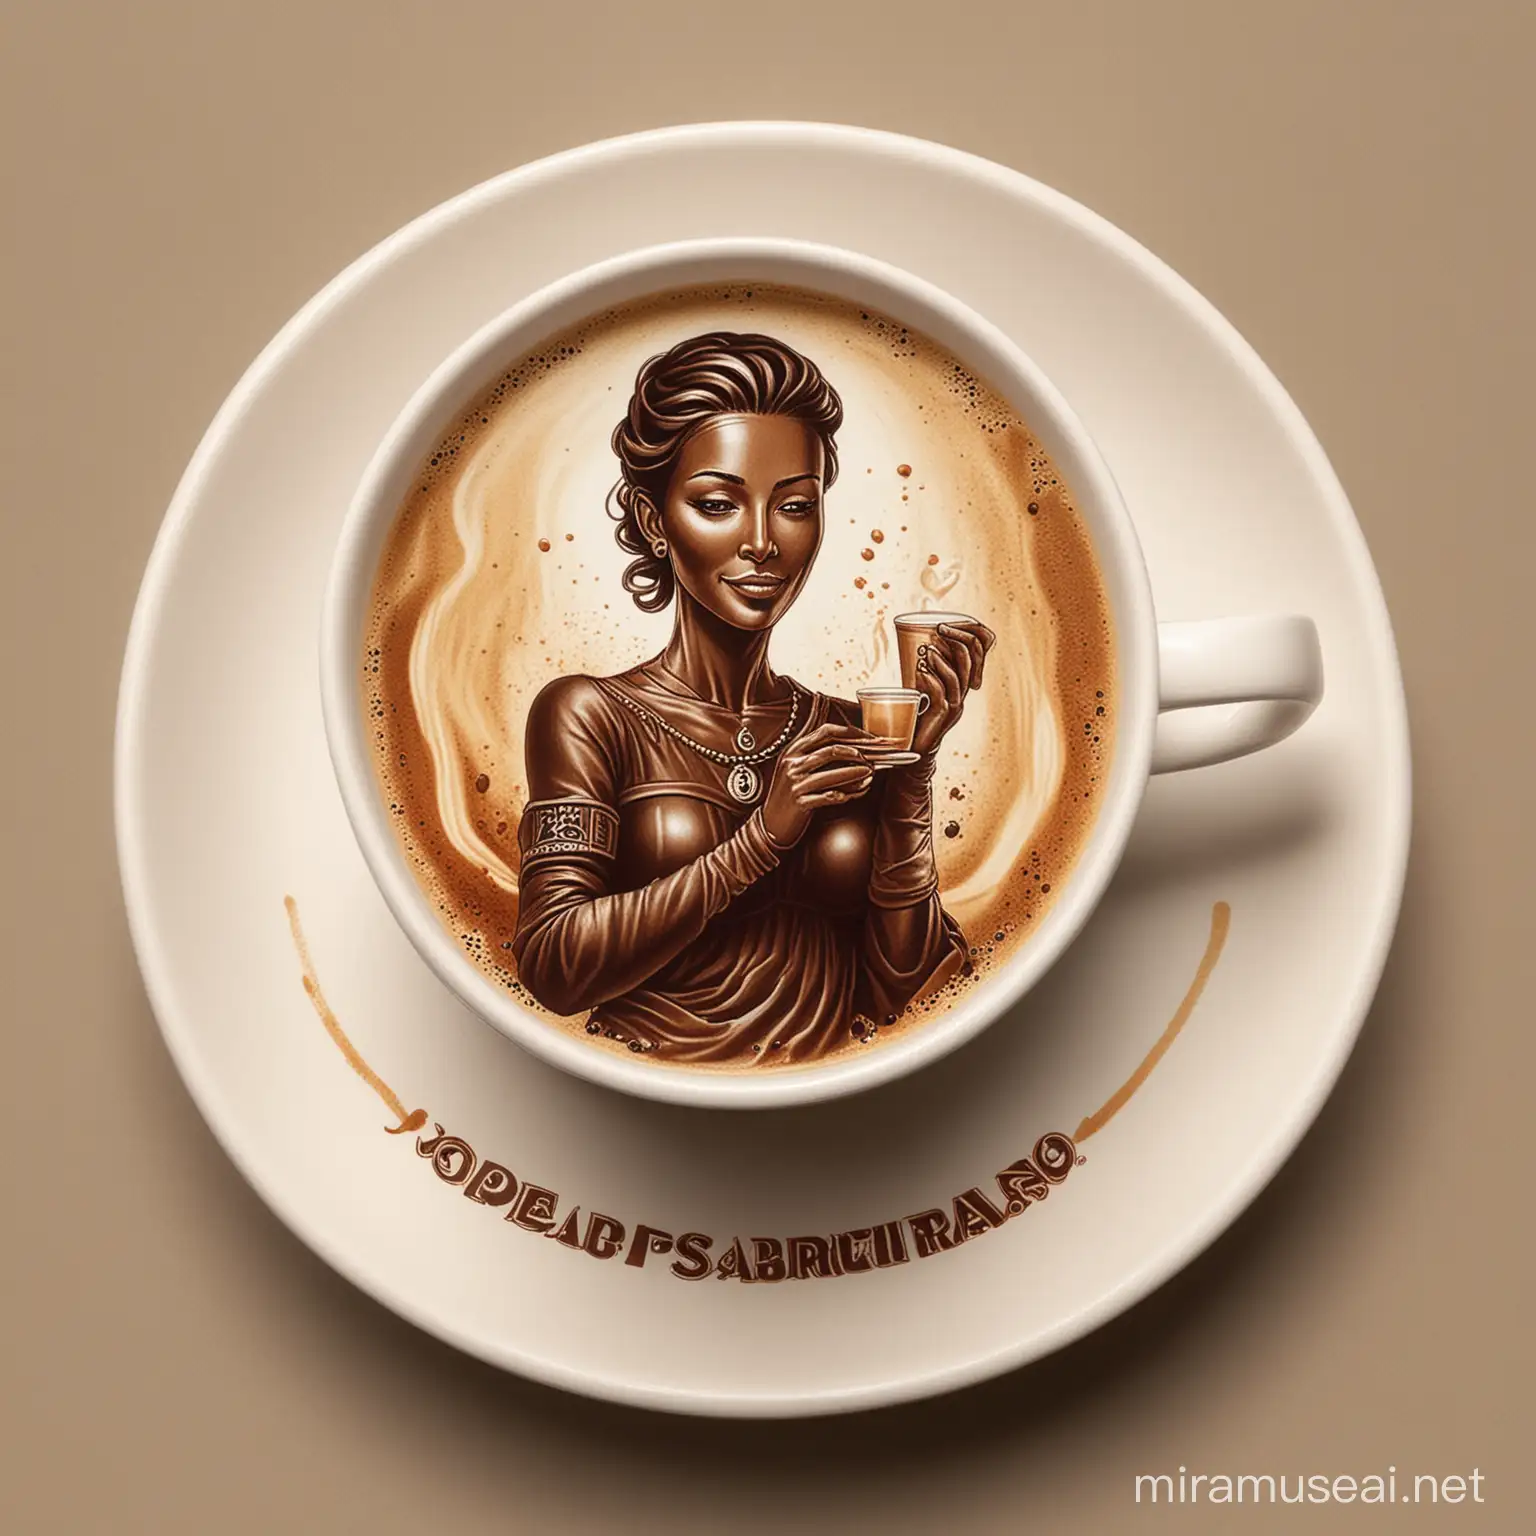 Elegant Coffee Brand Representations Dancing Women Figures in Coffee Streams